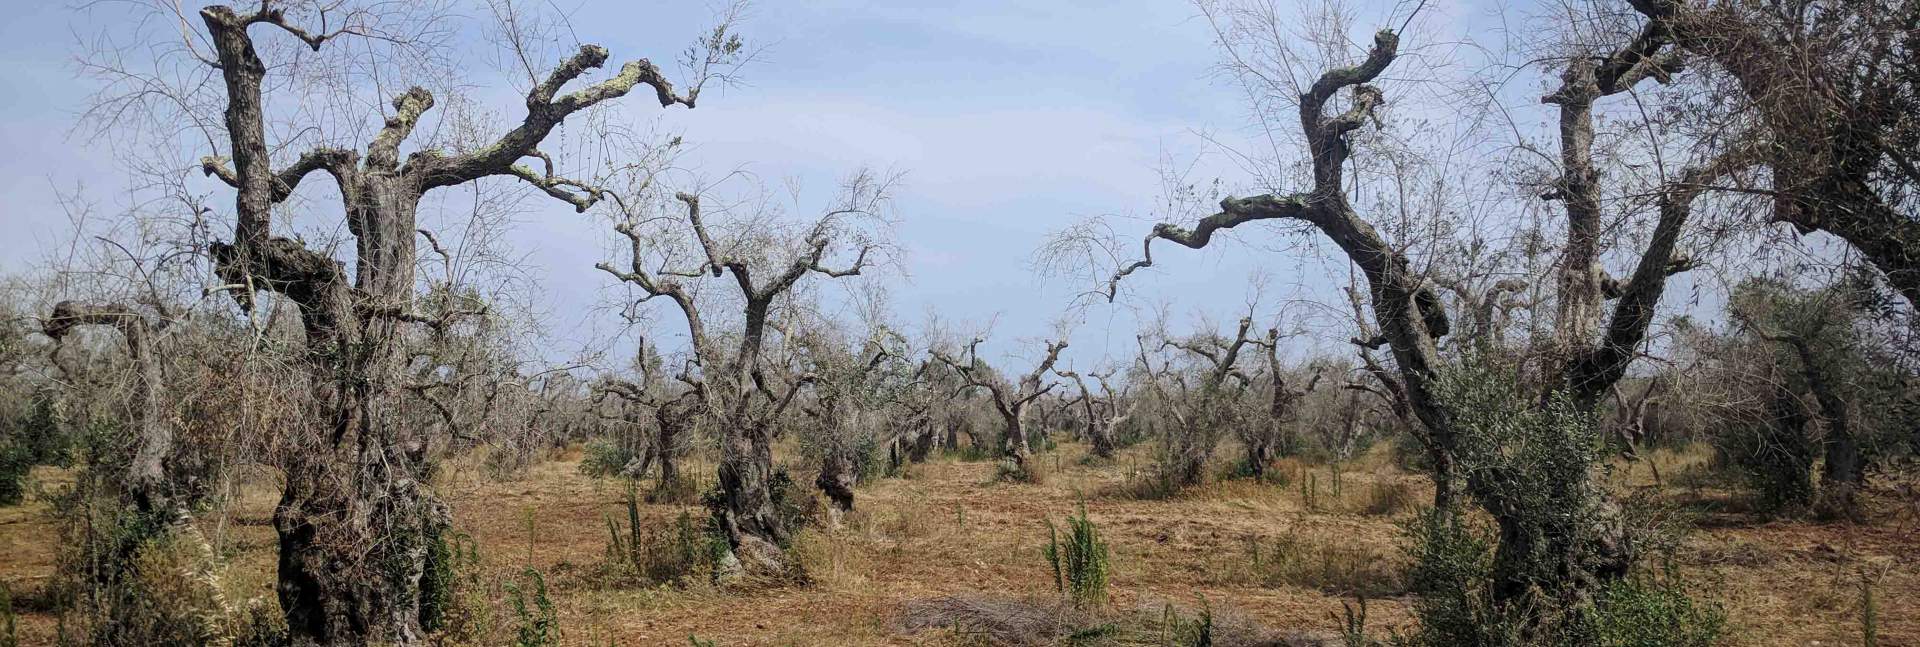 מטע זיתים נגוע במחוז פוליה באיטליה. החיידק פוגע בזרימת הנוזלים בעצים וגורם התייבשות 